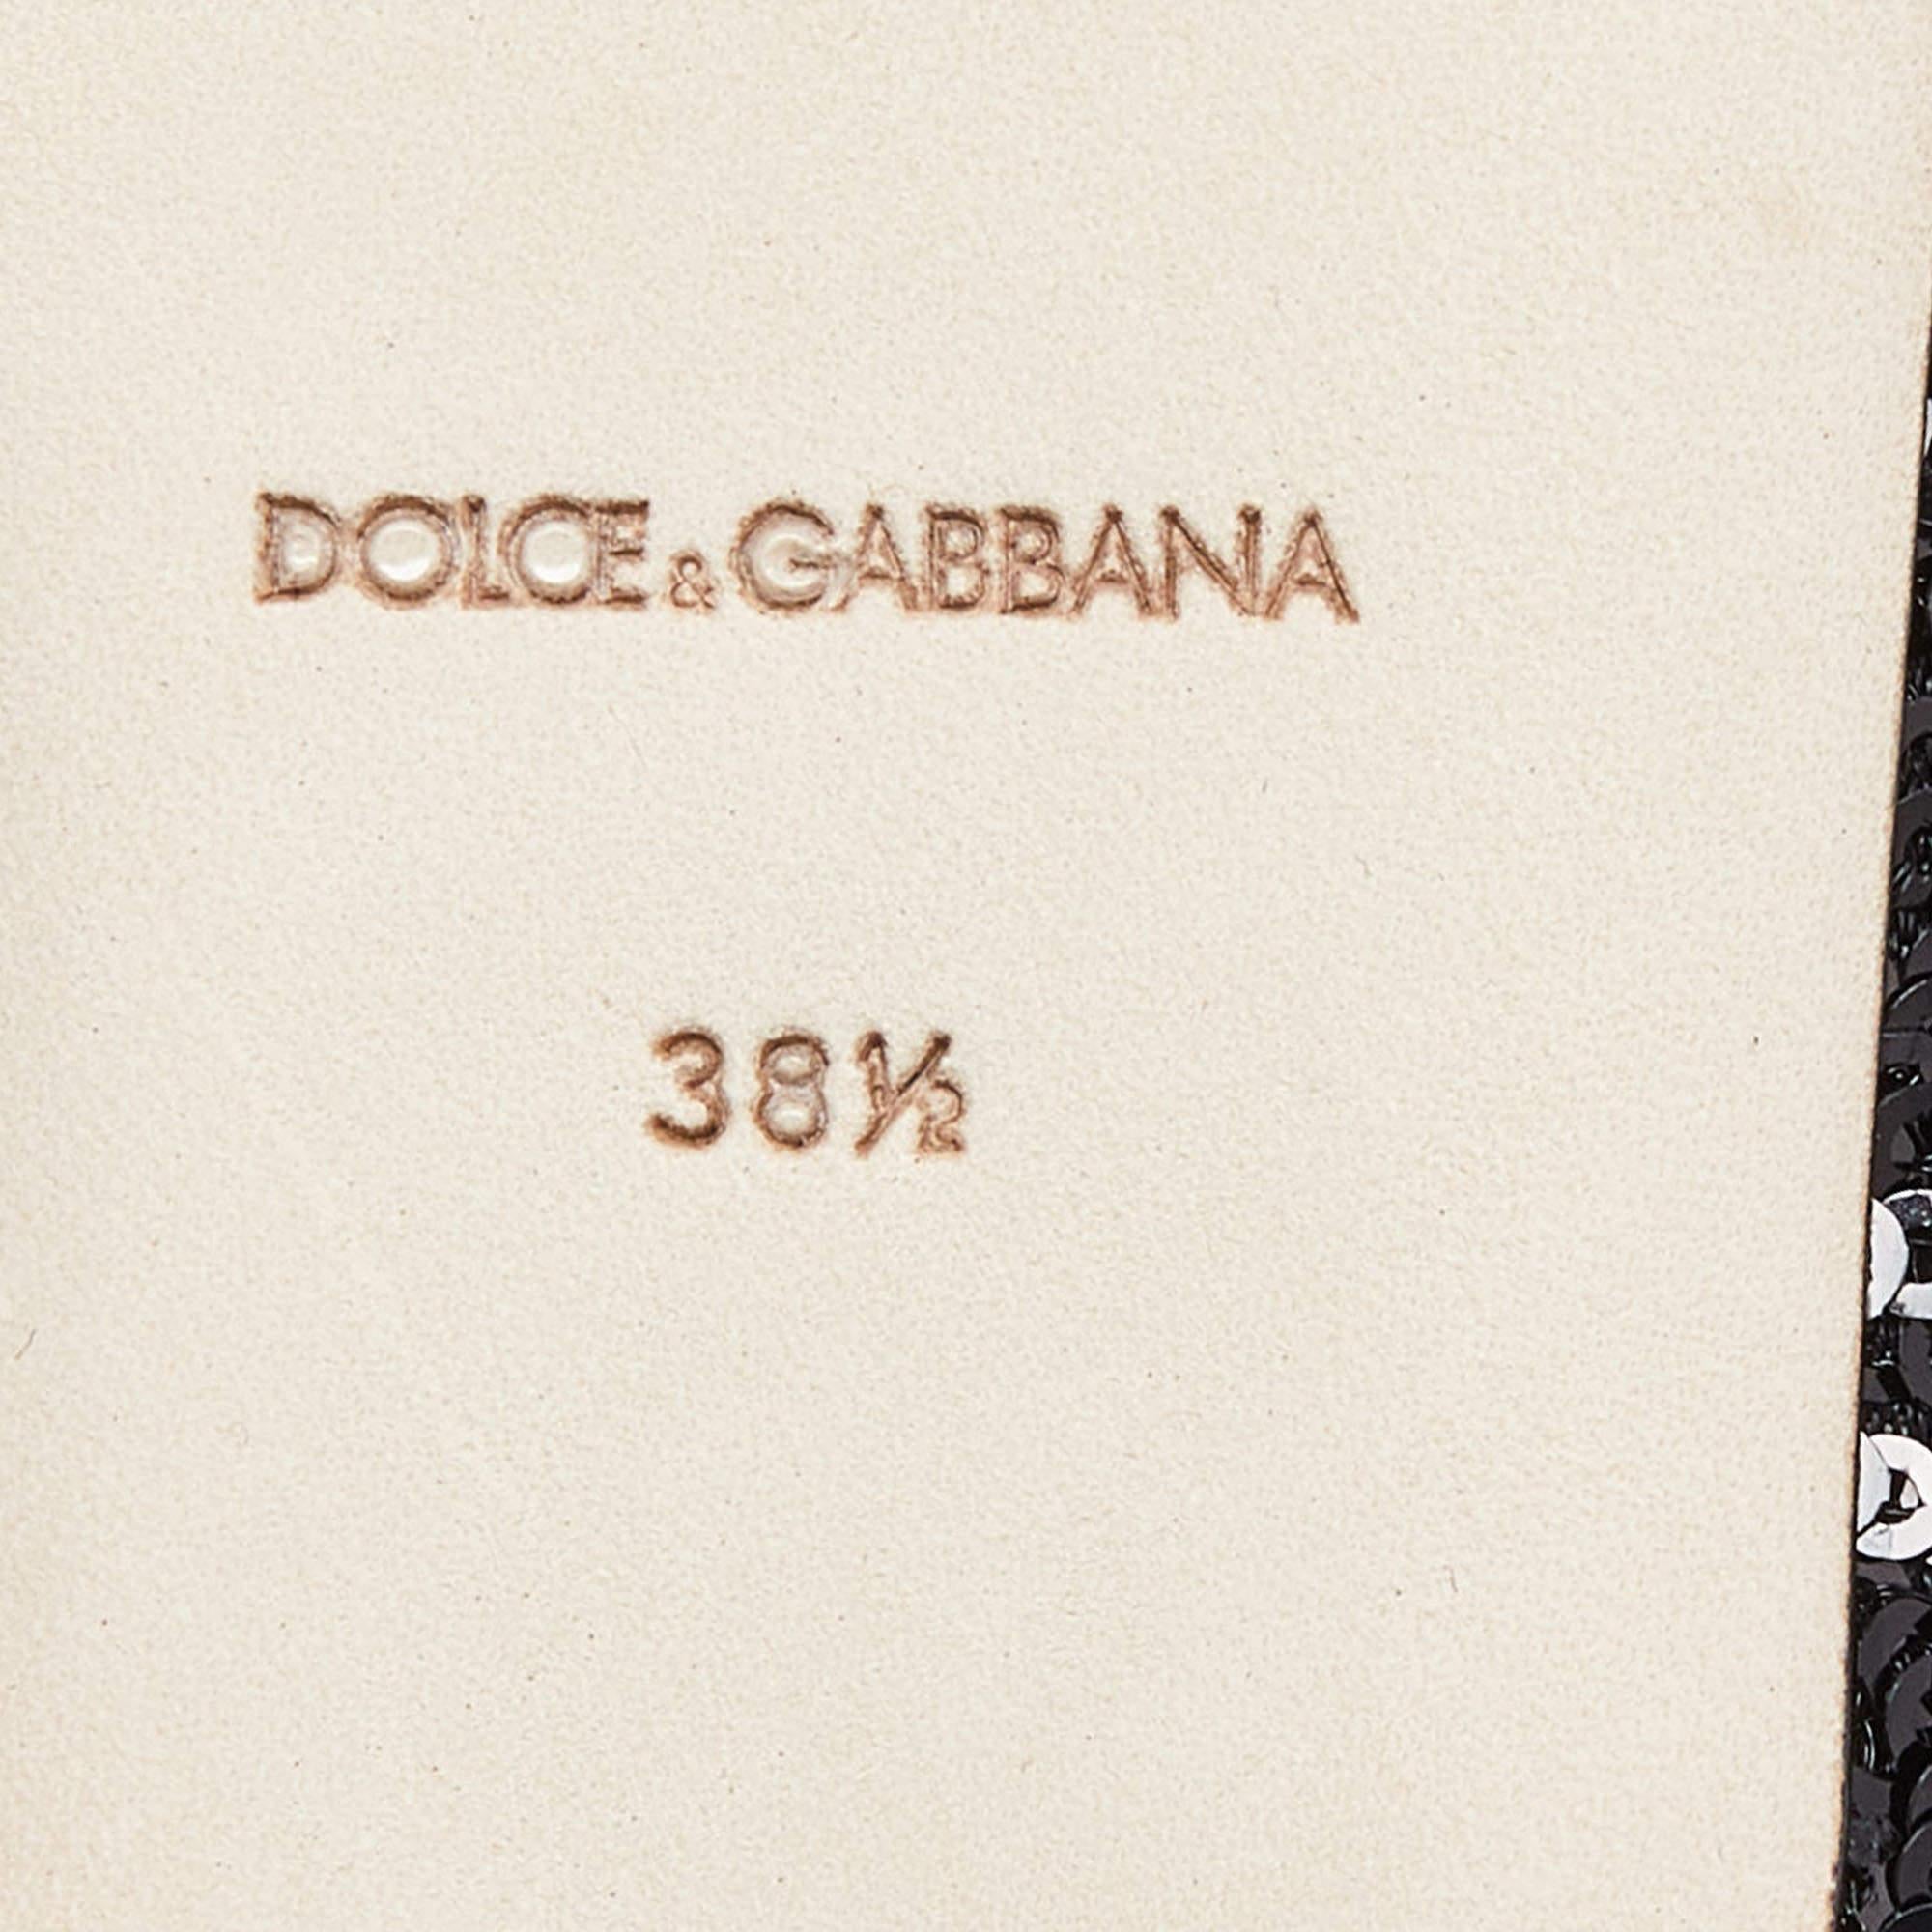 Dolce & Gabbana Black Sequins Crystal Embellished Ballet Flats Size 38.5 3